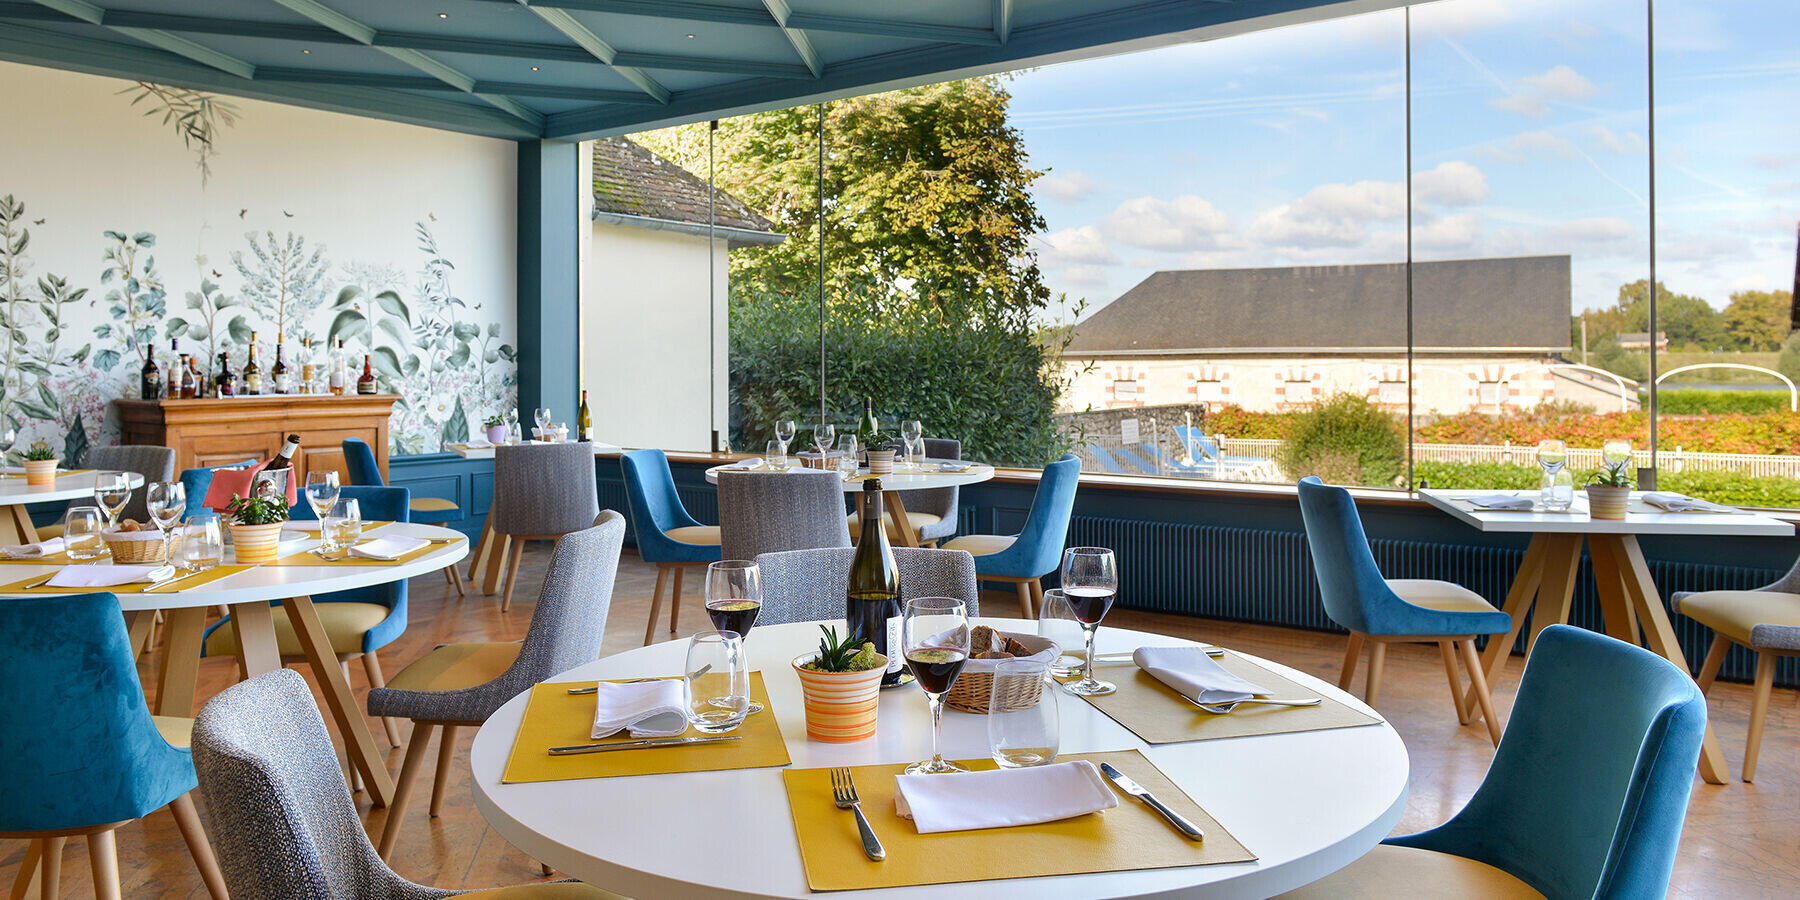 Vente FDC hôtel-restaurant à Chaumont sur Loire